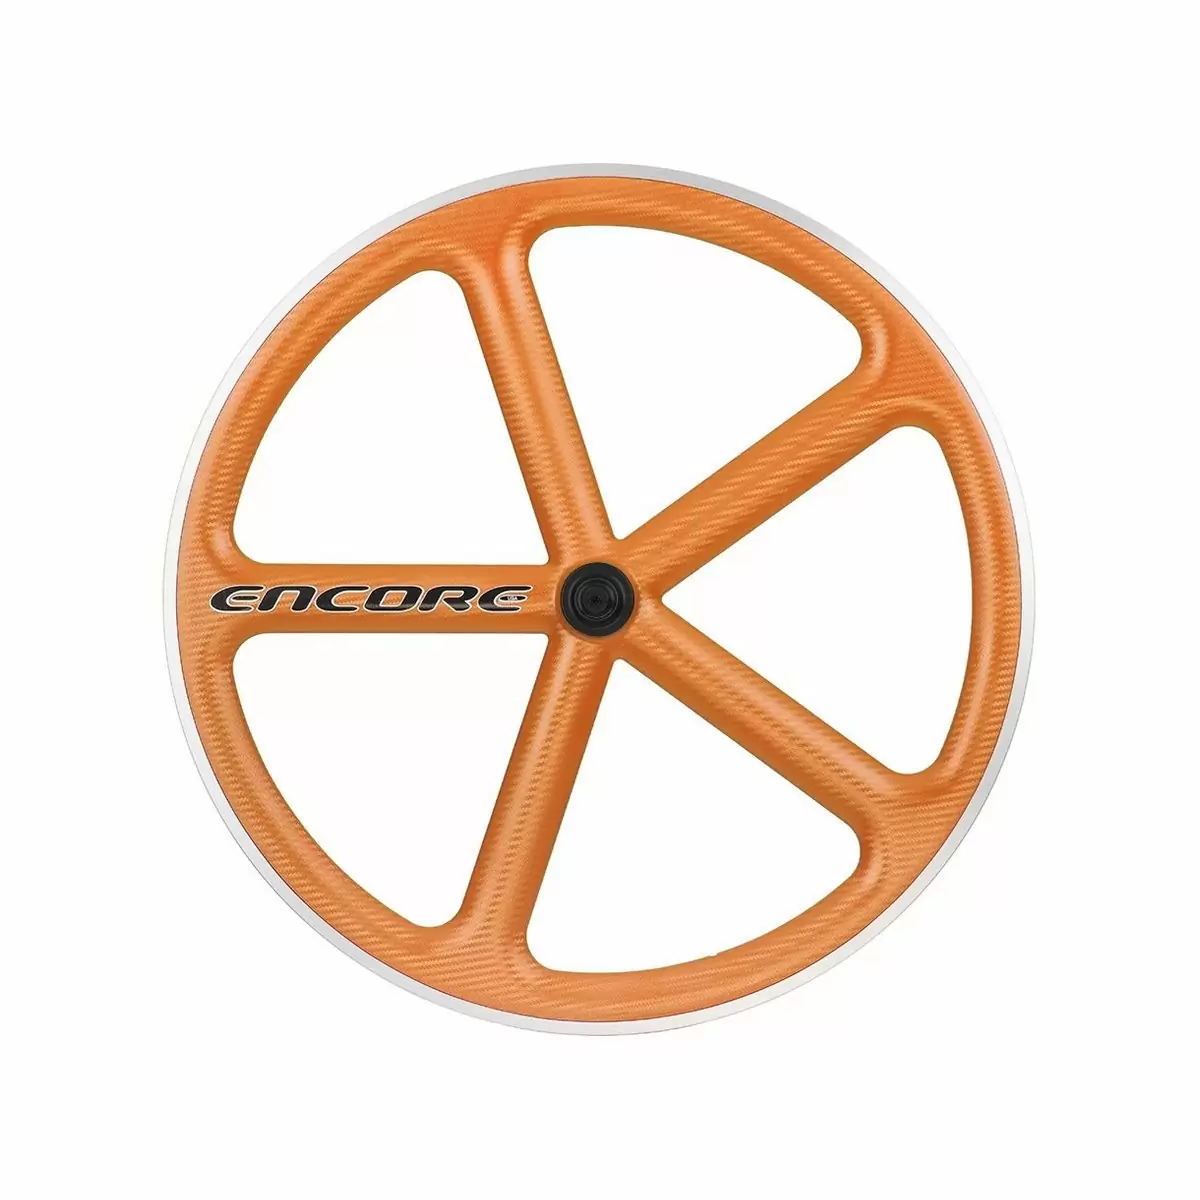 Hinterrad 700c Track 5 Speichen Carbon Geflecht orange msw - image